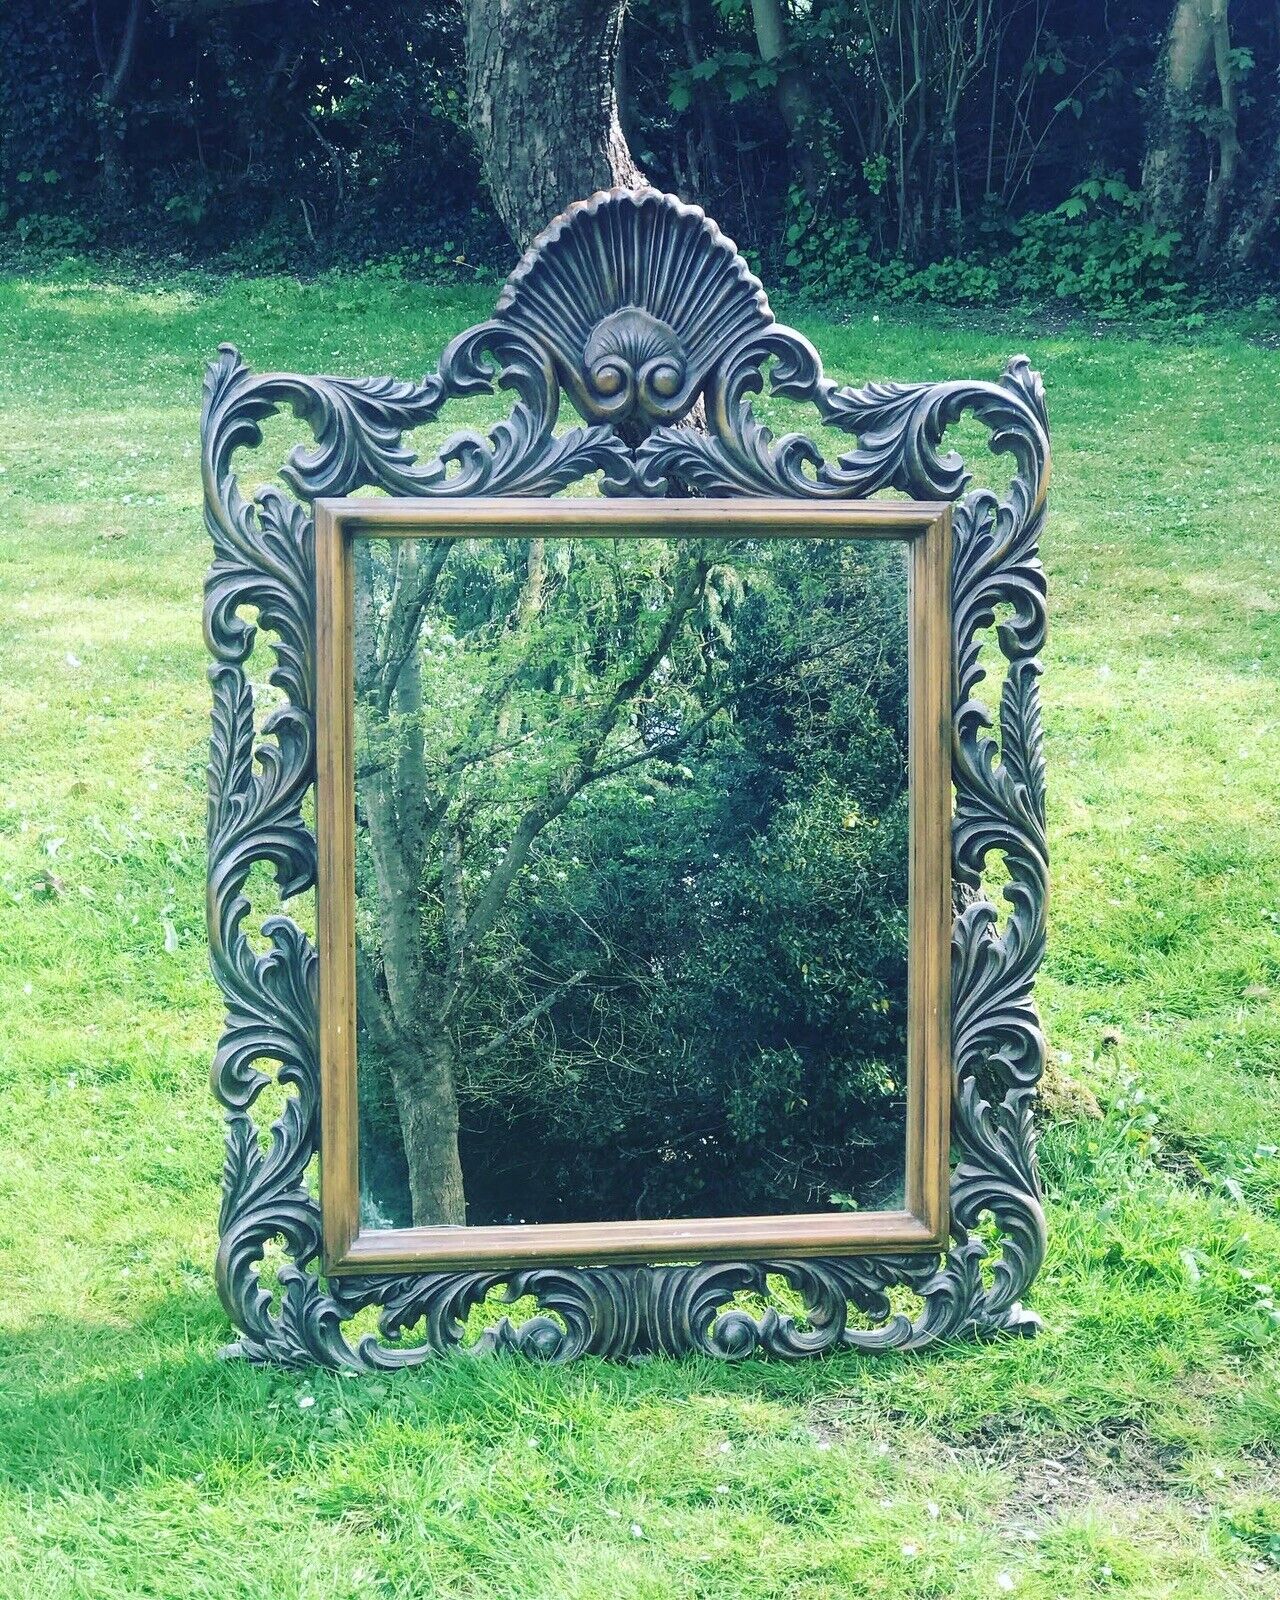 Mirror In Ornate Frame